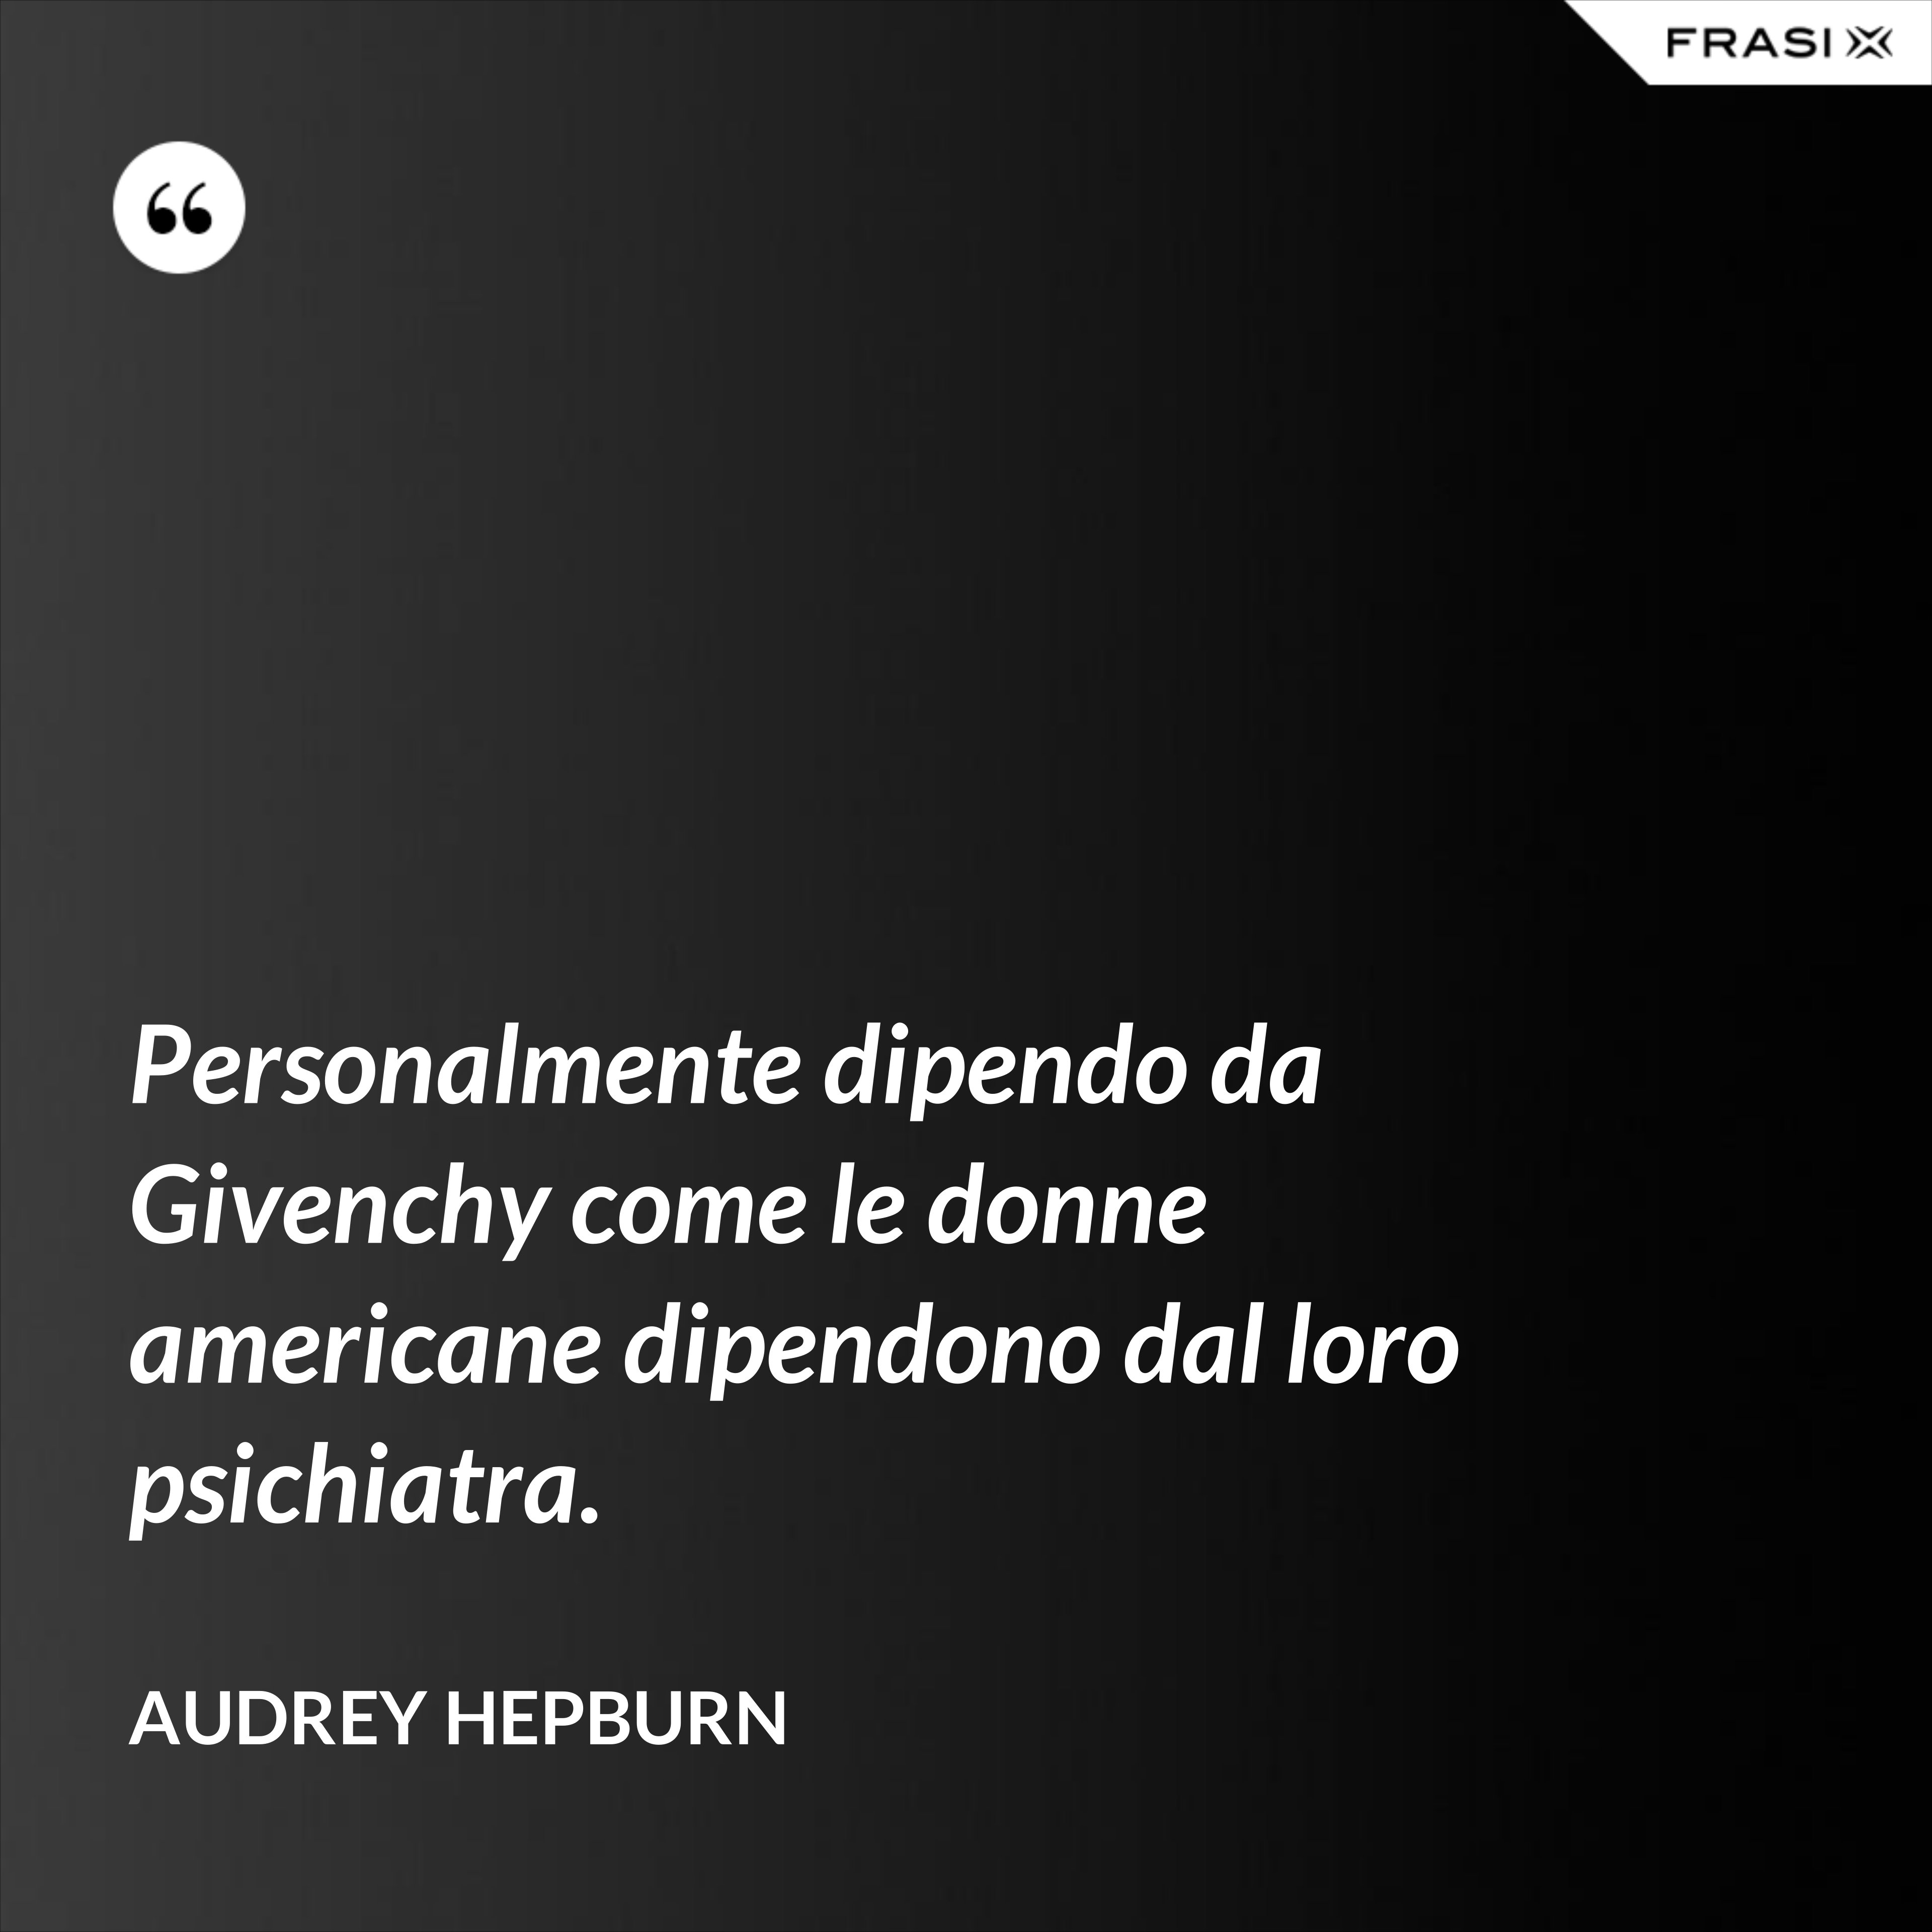 Personalmente dipendo da Givenchy come le donne americane dipendono dal loro psichiatra. - Audrey Hepburn